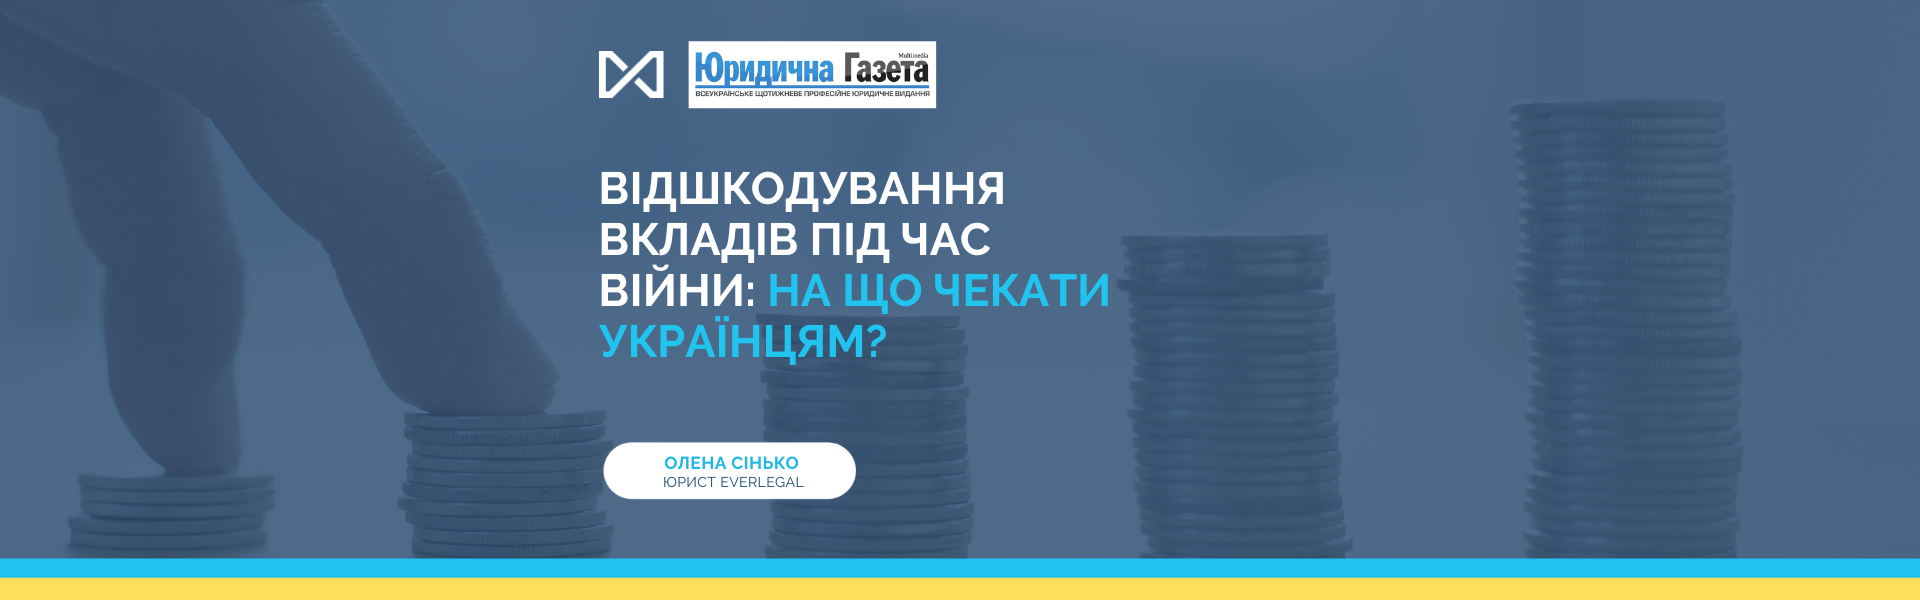 Reimbursement of deposits during the war: what can Ukrainians expect?